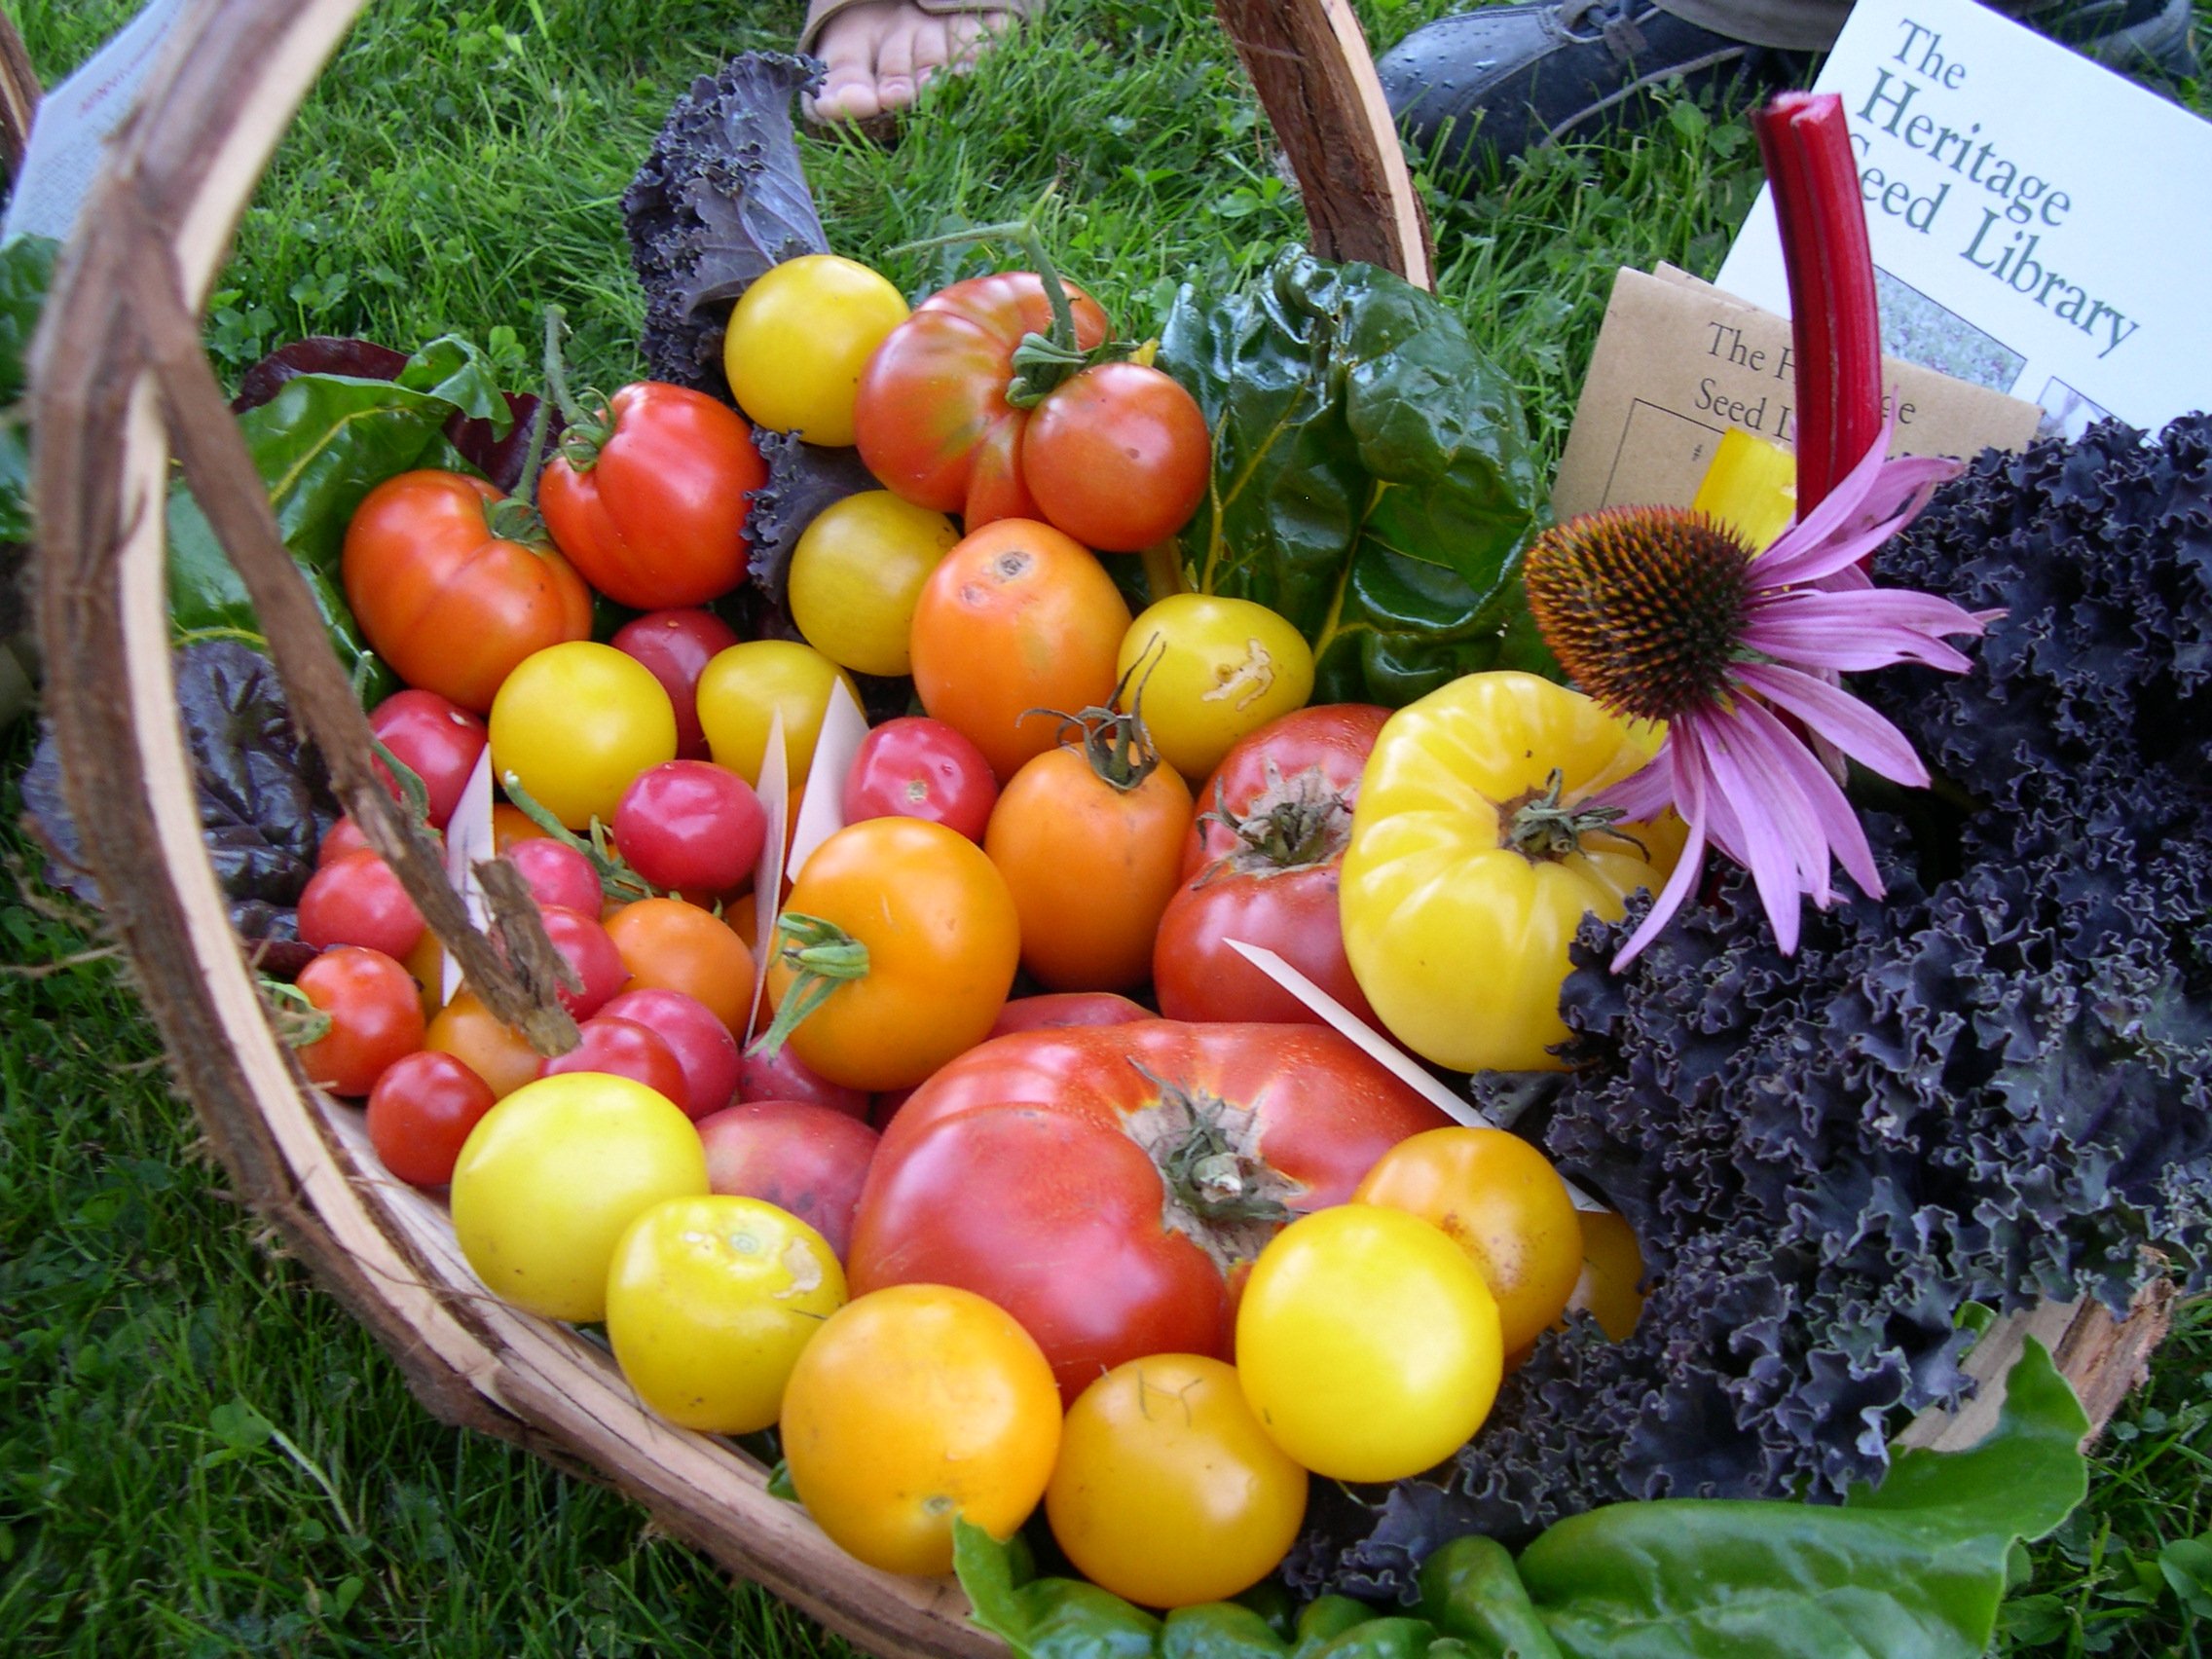 HSL tomatoes in basket.jpg